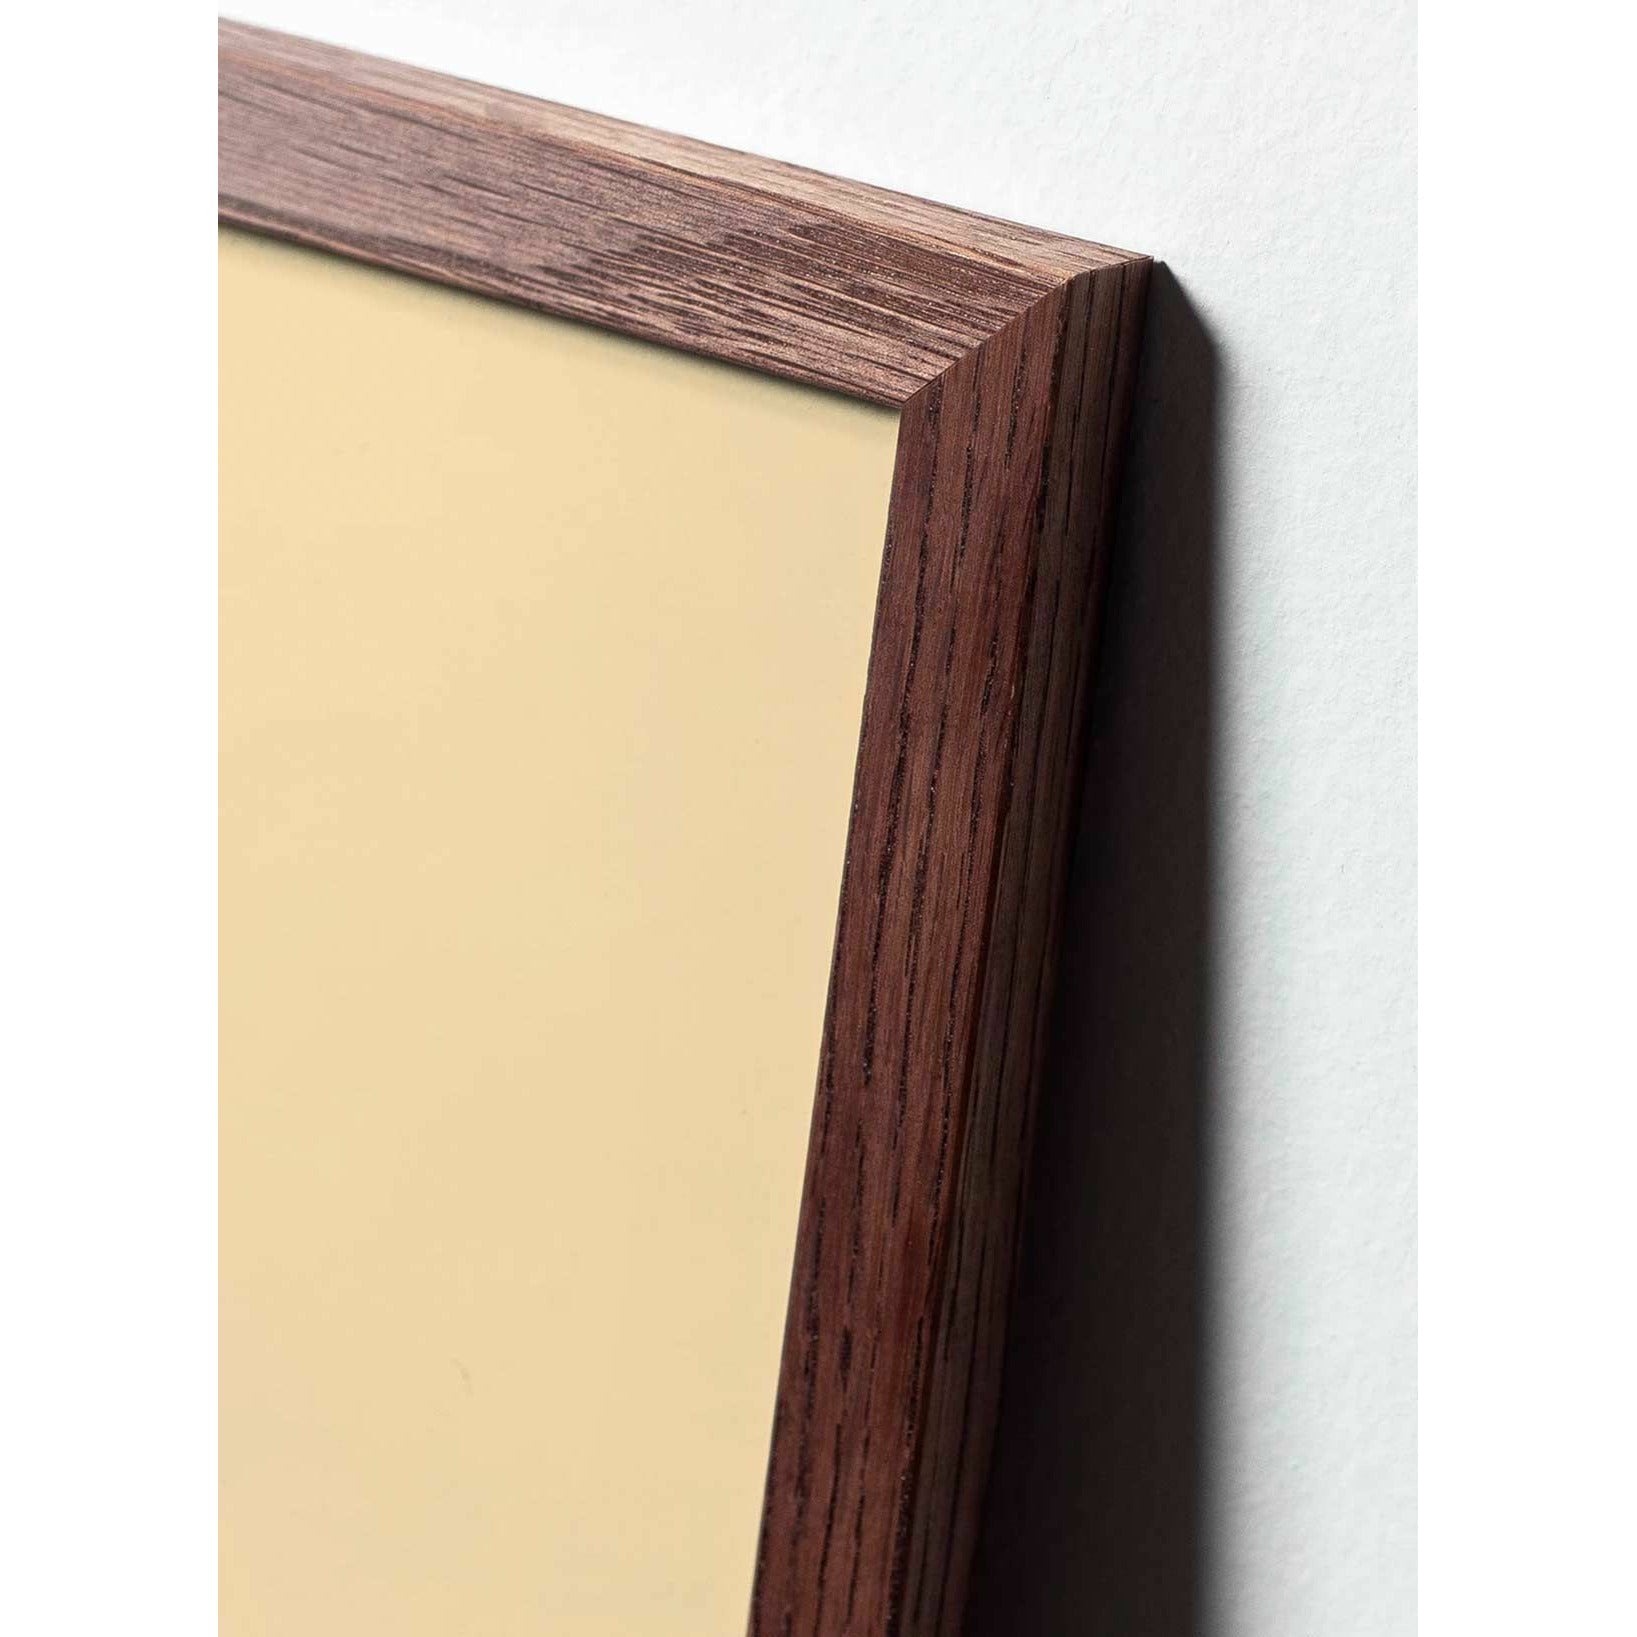 Póster de línea de huevo de creación, marco hecho de madera oscura 50x70 cm, fondo blanco